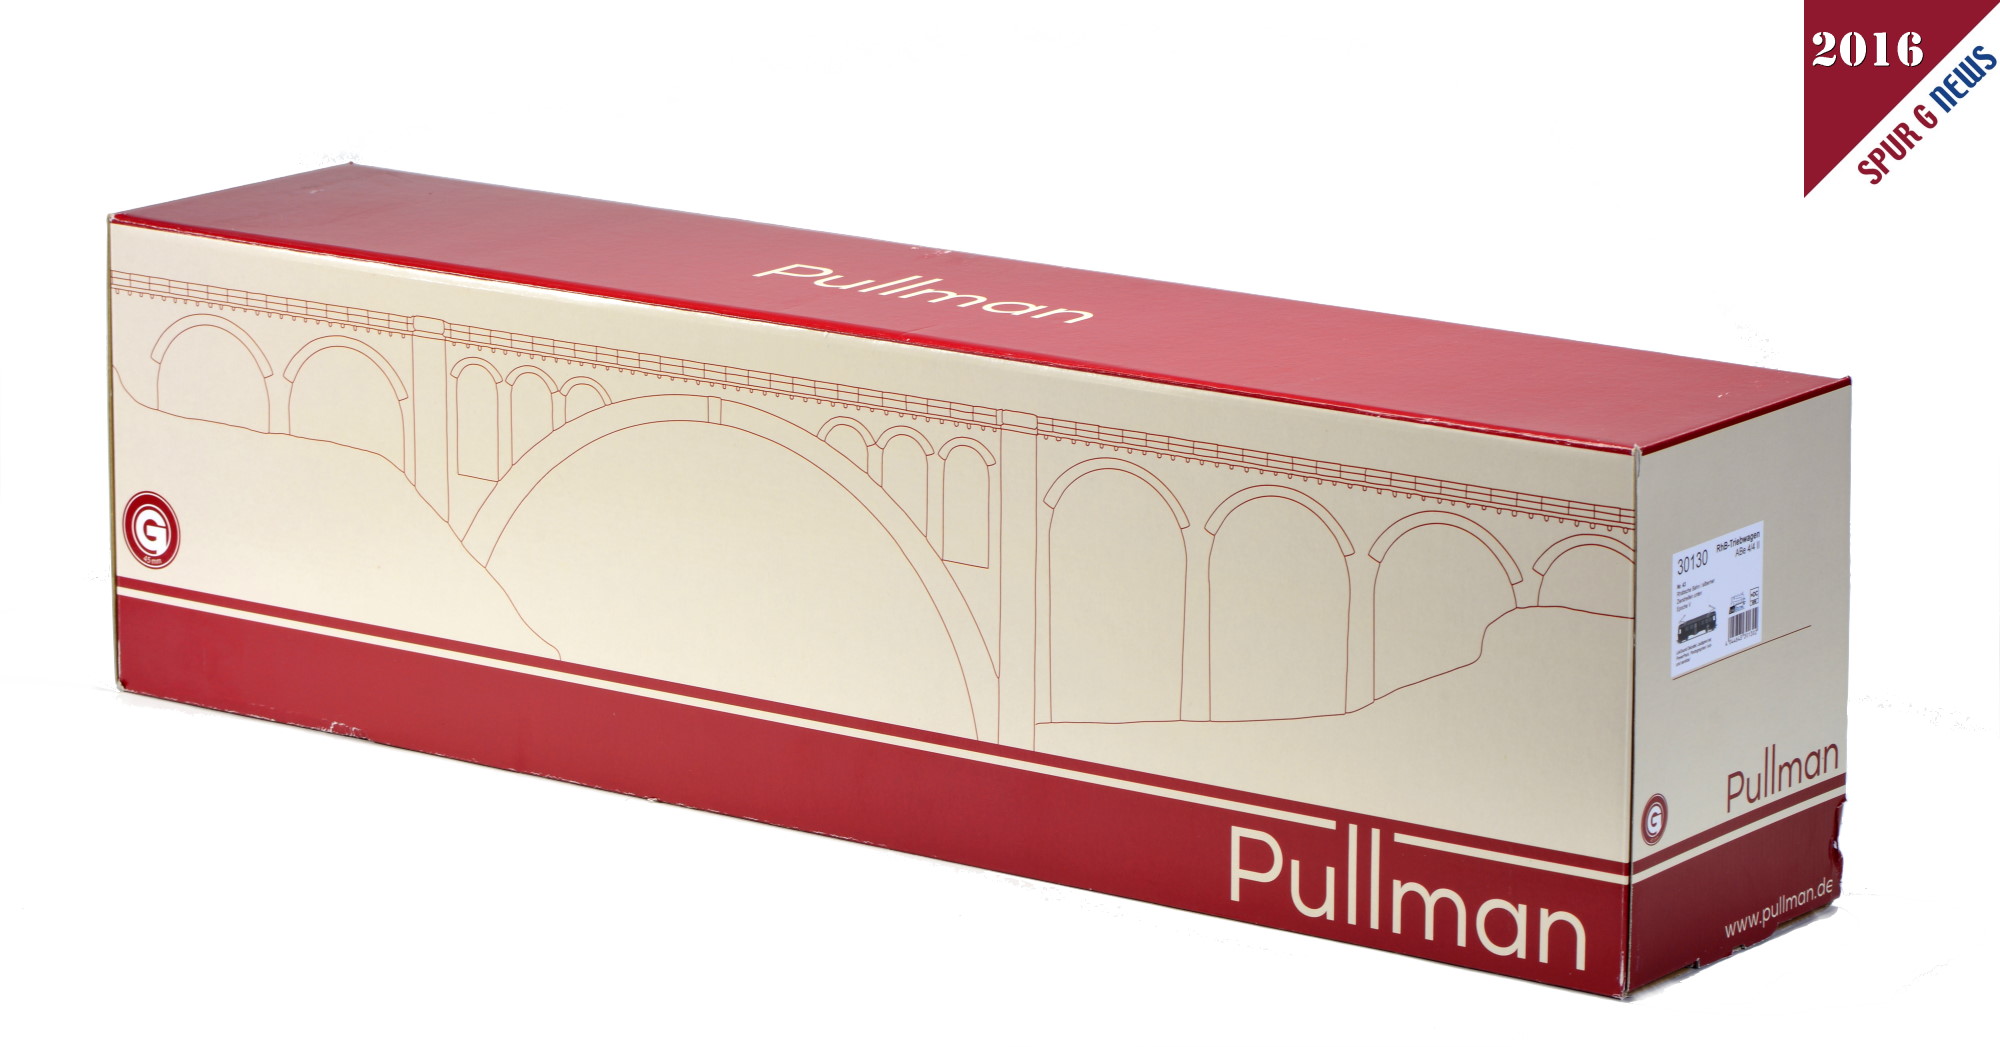 Der Pullmann - Umkarton von der Schokoladenseite mit der stilistischen Wiesener Viadukt auf der Strecke von Davos nach Filisur. 